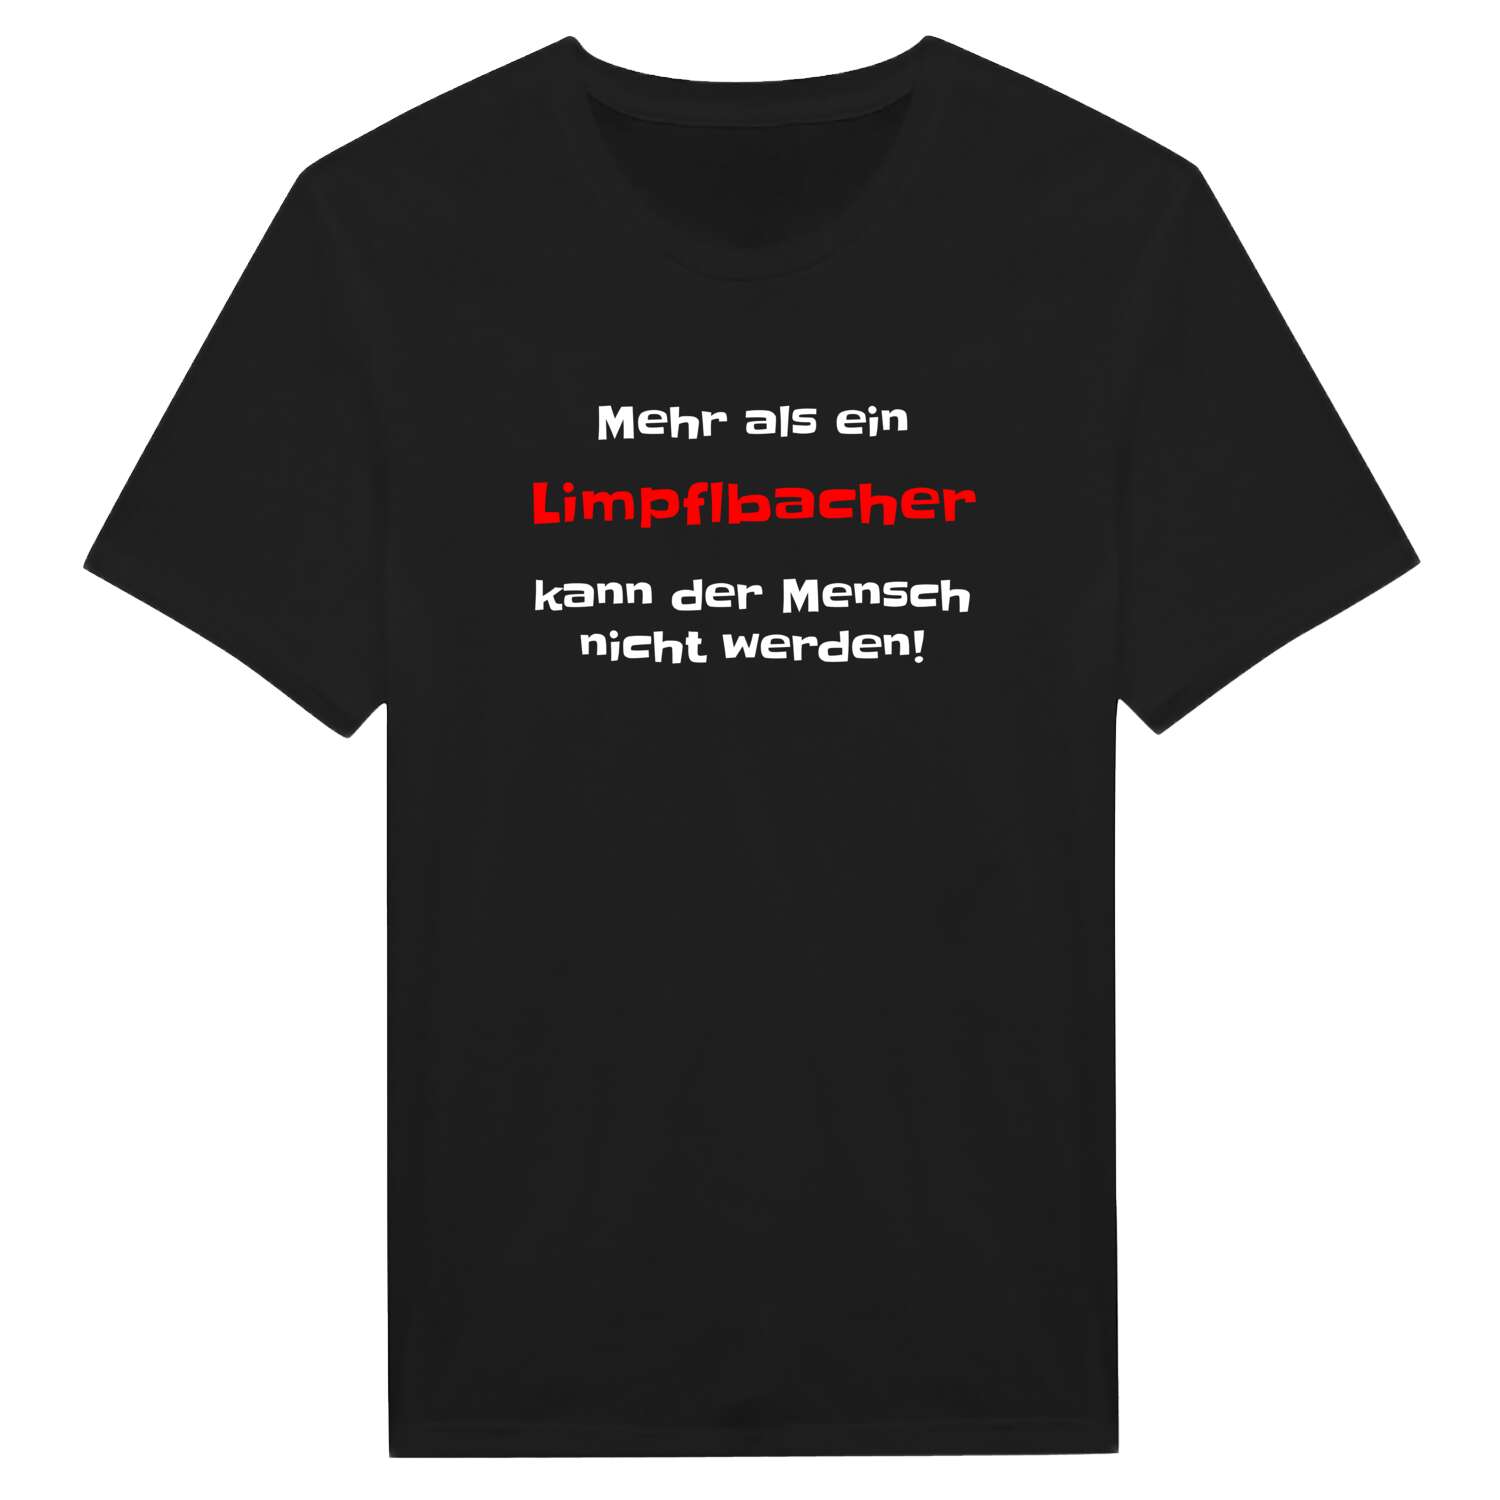 Limpflbach T-Shirt »Mehr als ein«